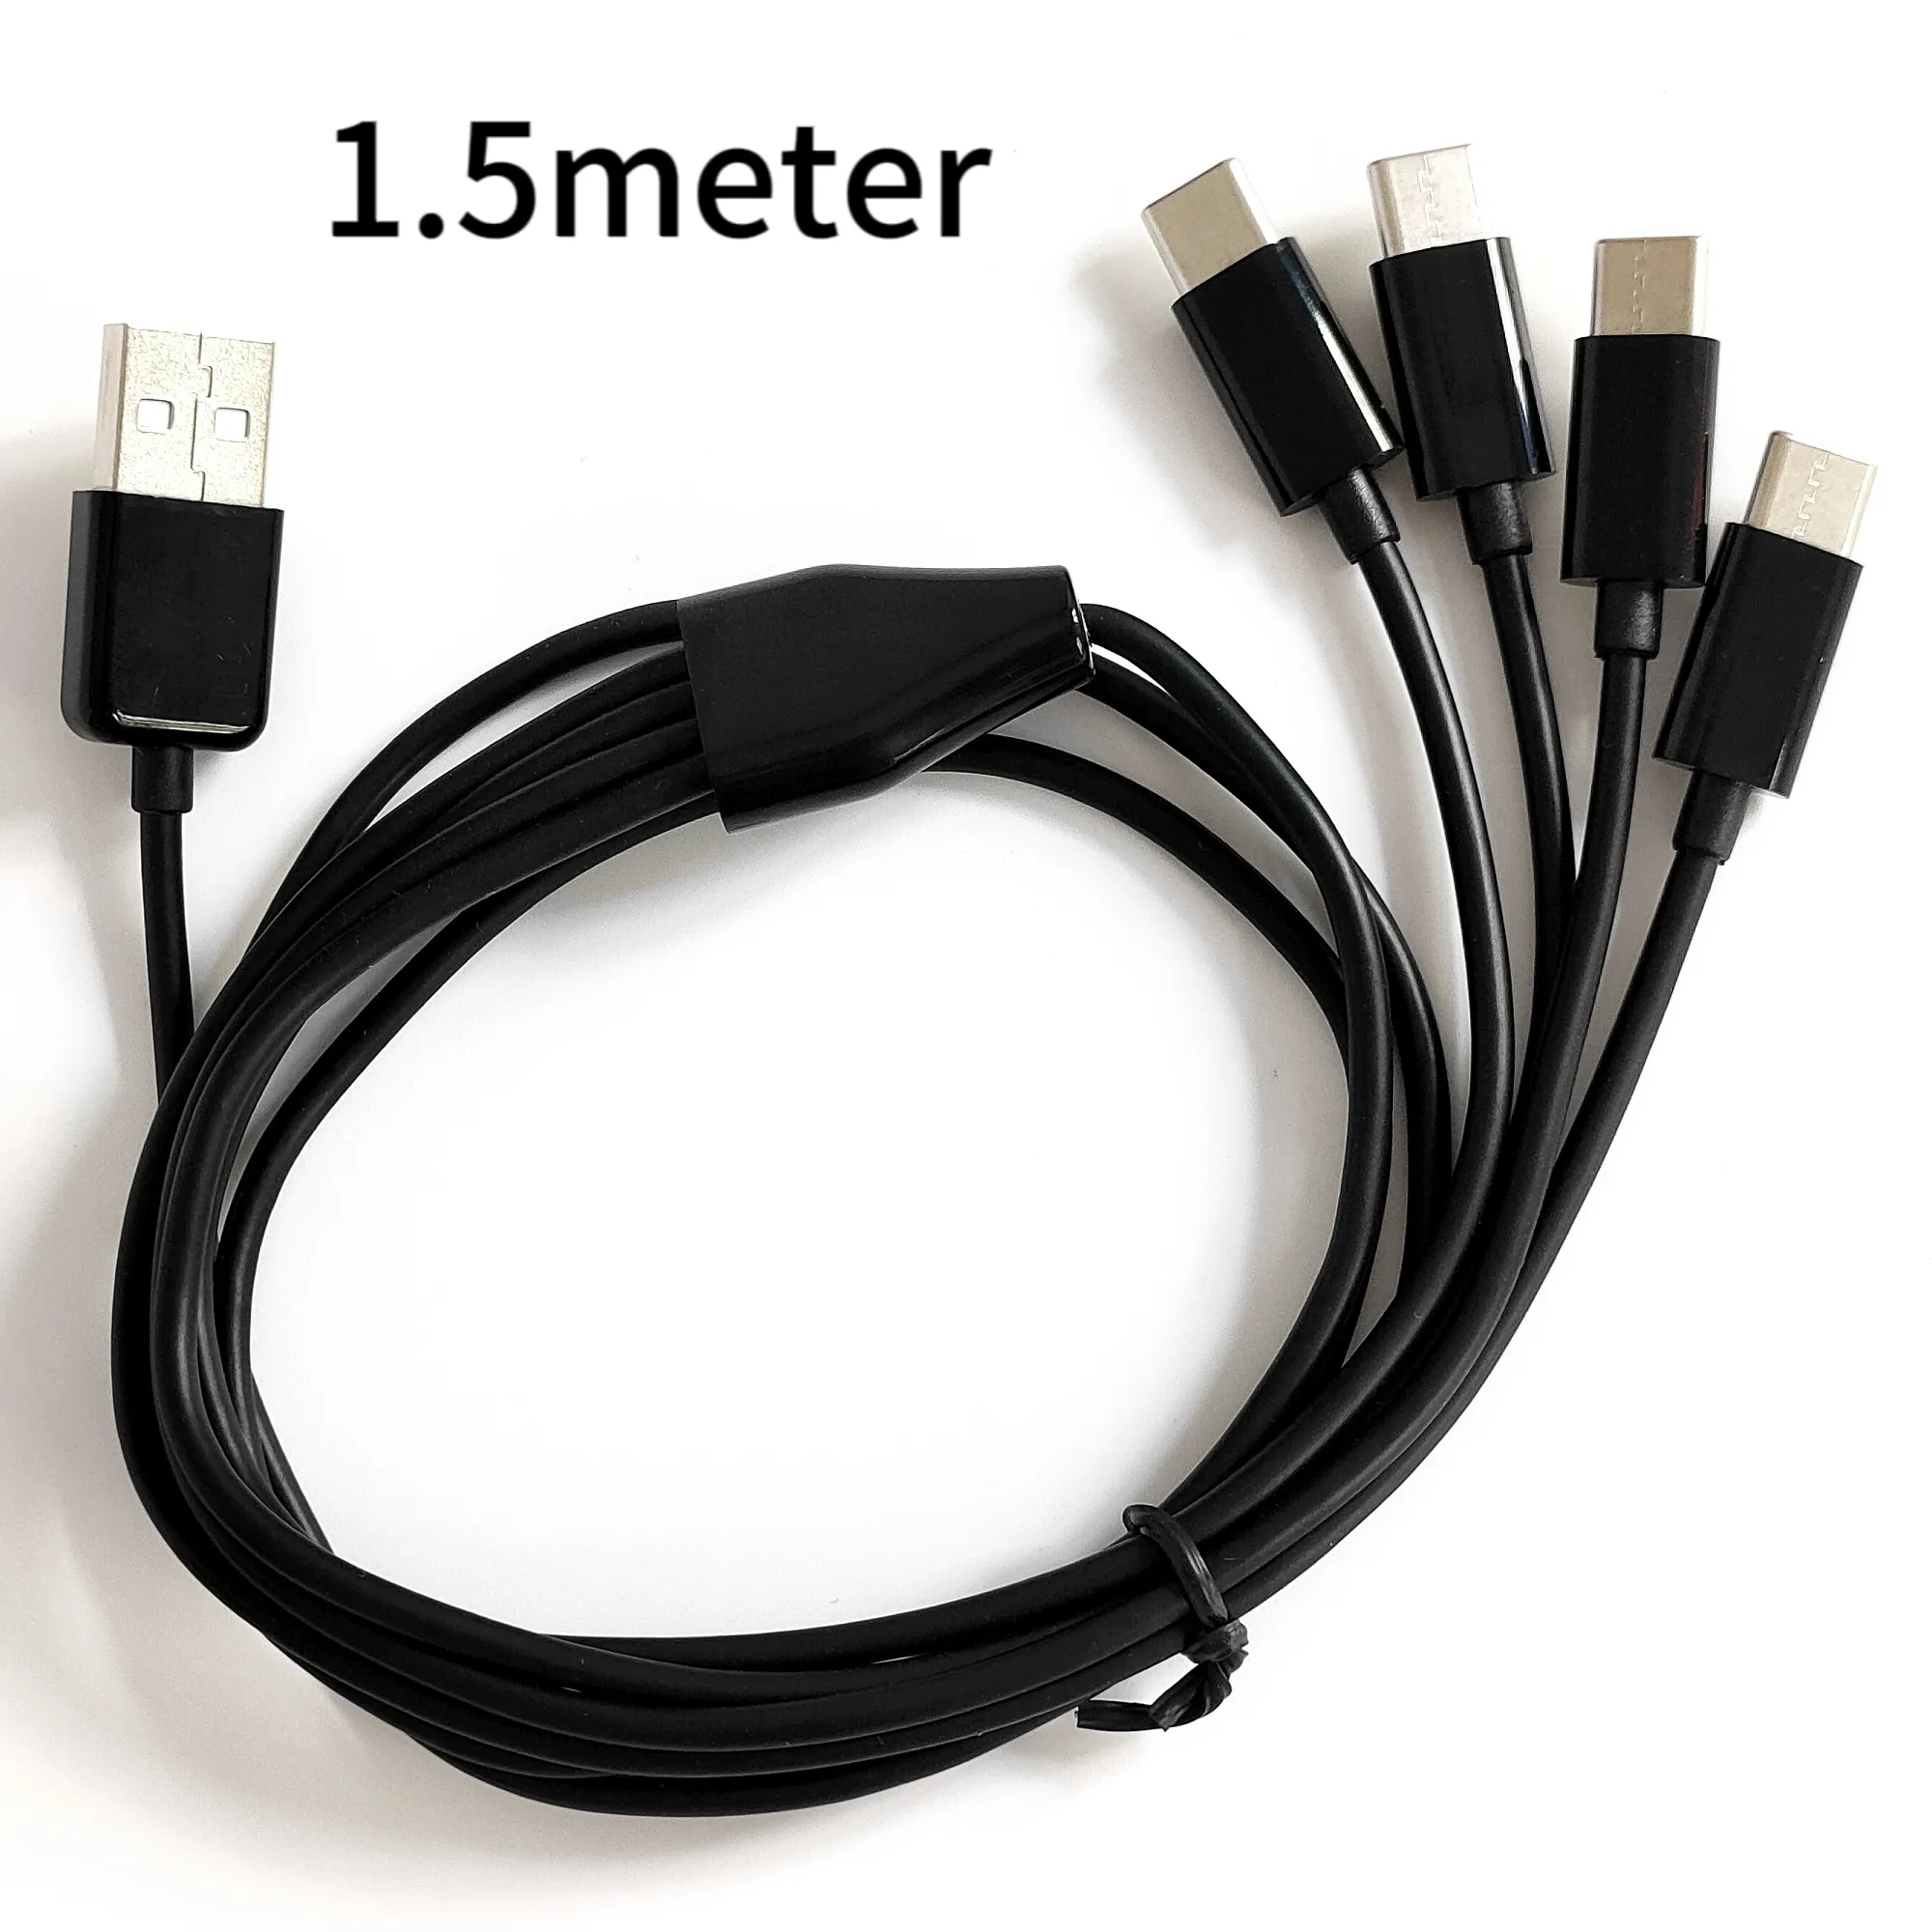 Kabel pengisi daya 1.50meter USB ke 4 Tipe C, kabel pengisi daya USB-C 4-in-1